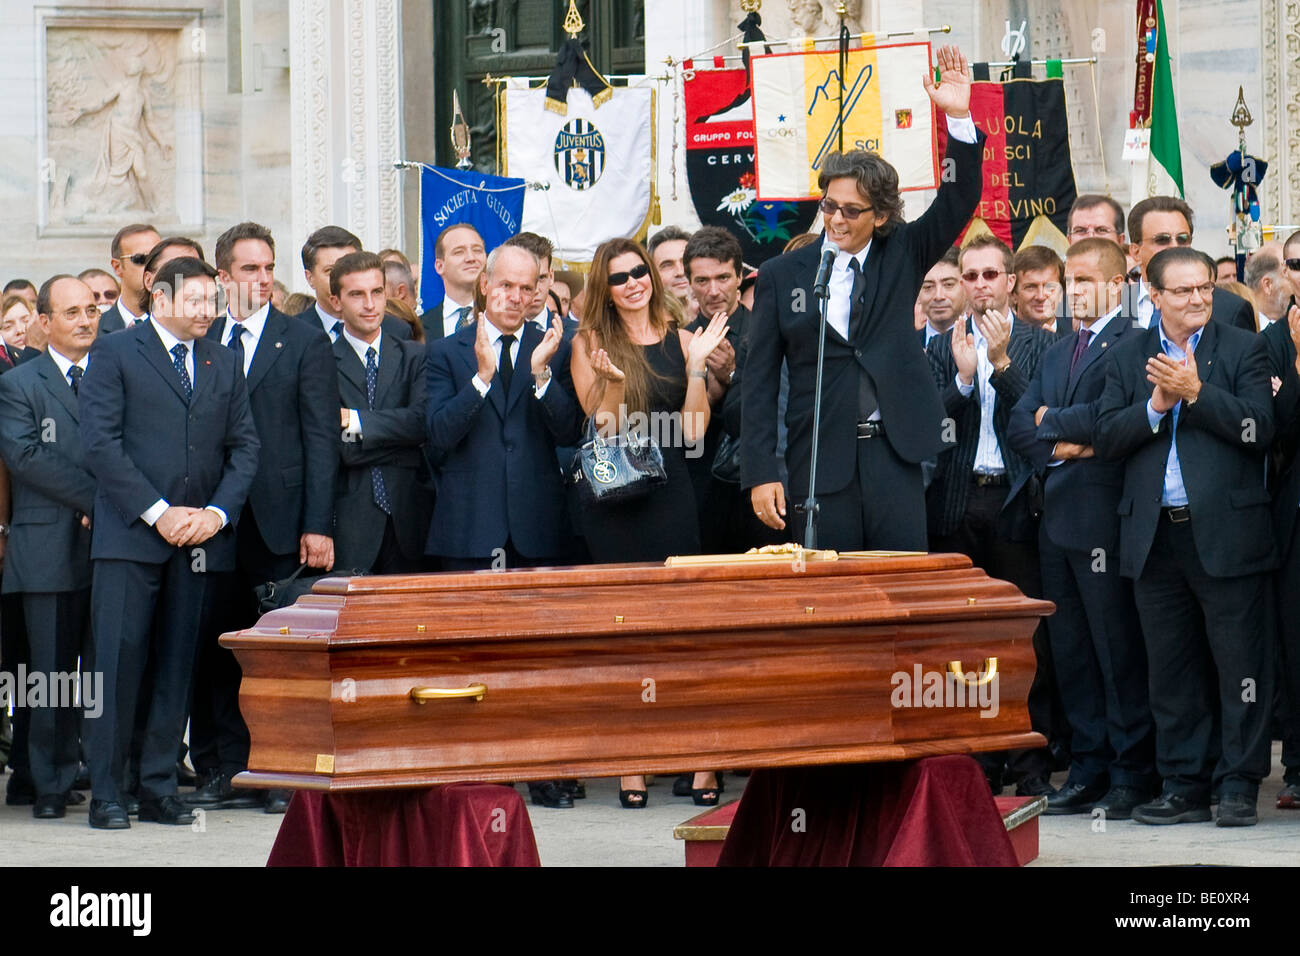 Fiorello, il funerale di Mike Bongiorno, Milano, Italia, 12 settembre 2009 Foto Stock